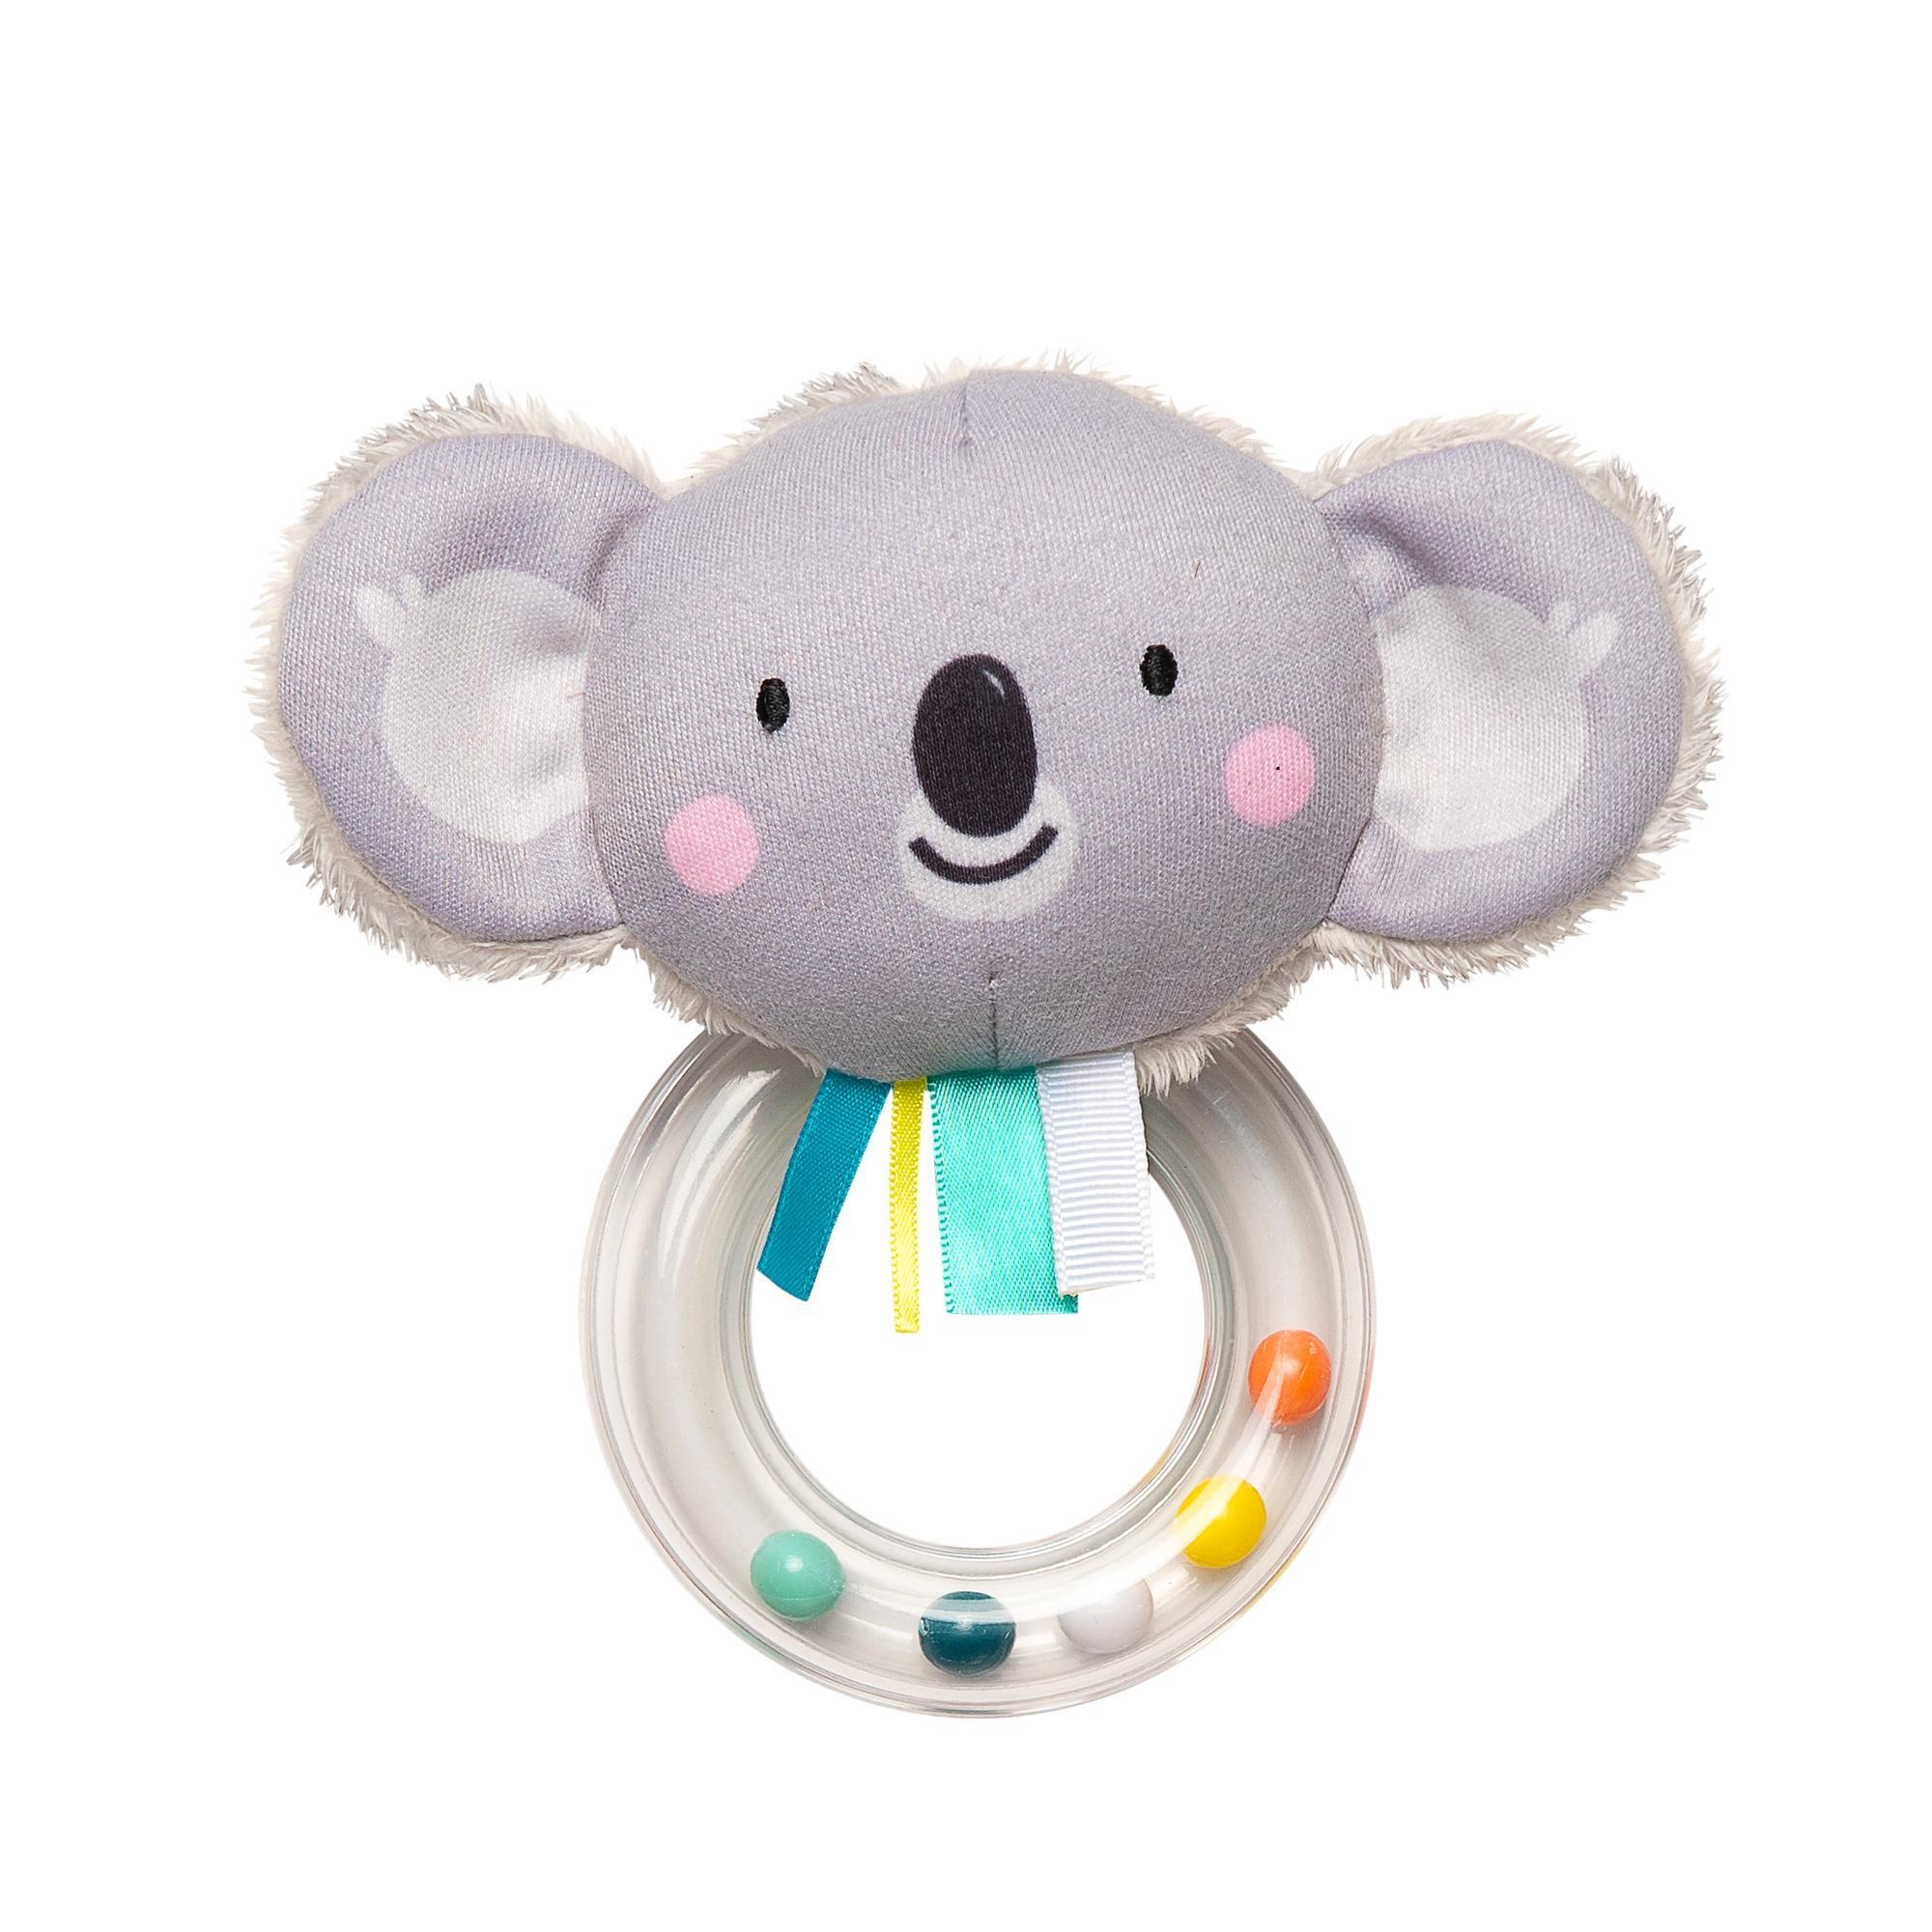 Taf Toys Barškutis
„Kimmy Koala“ - Taf Toys